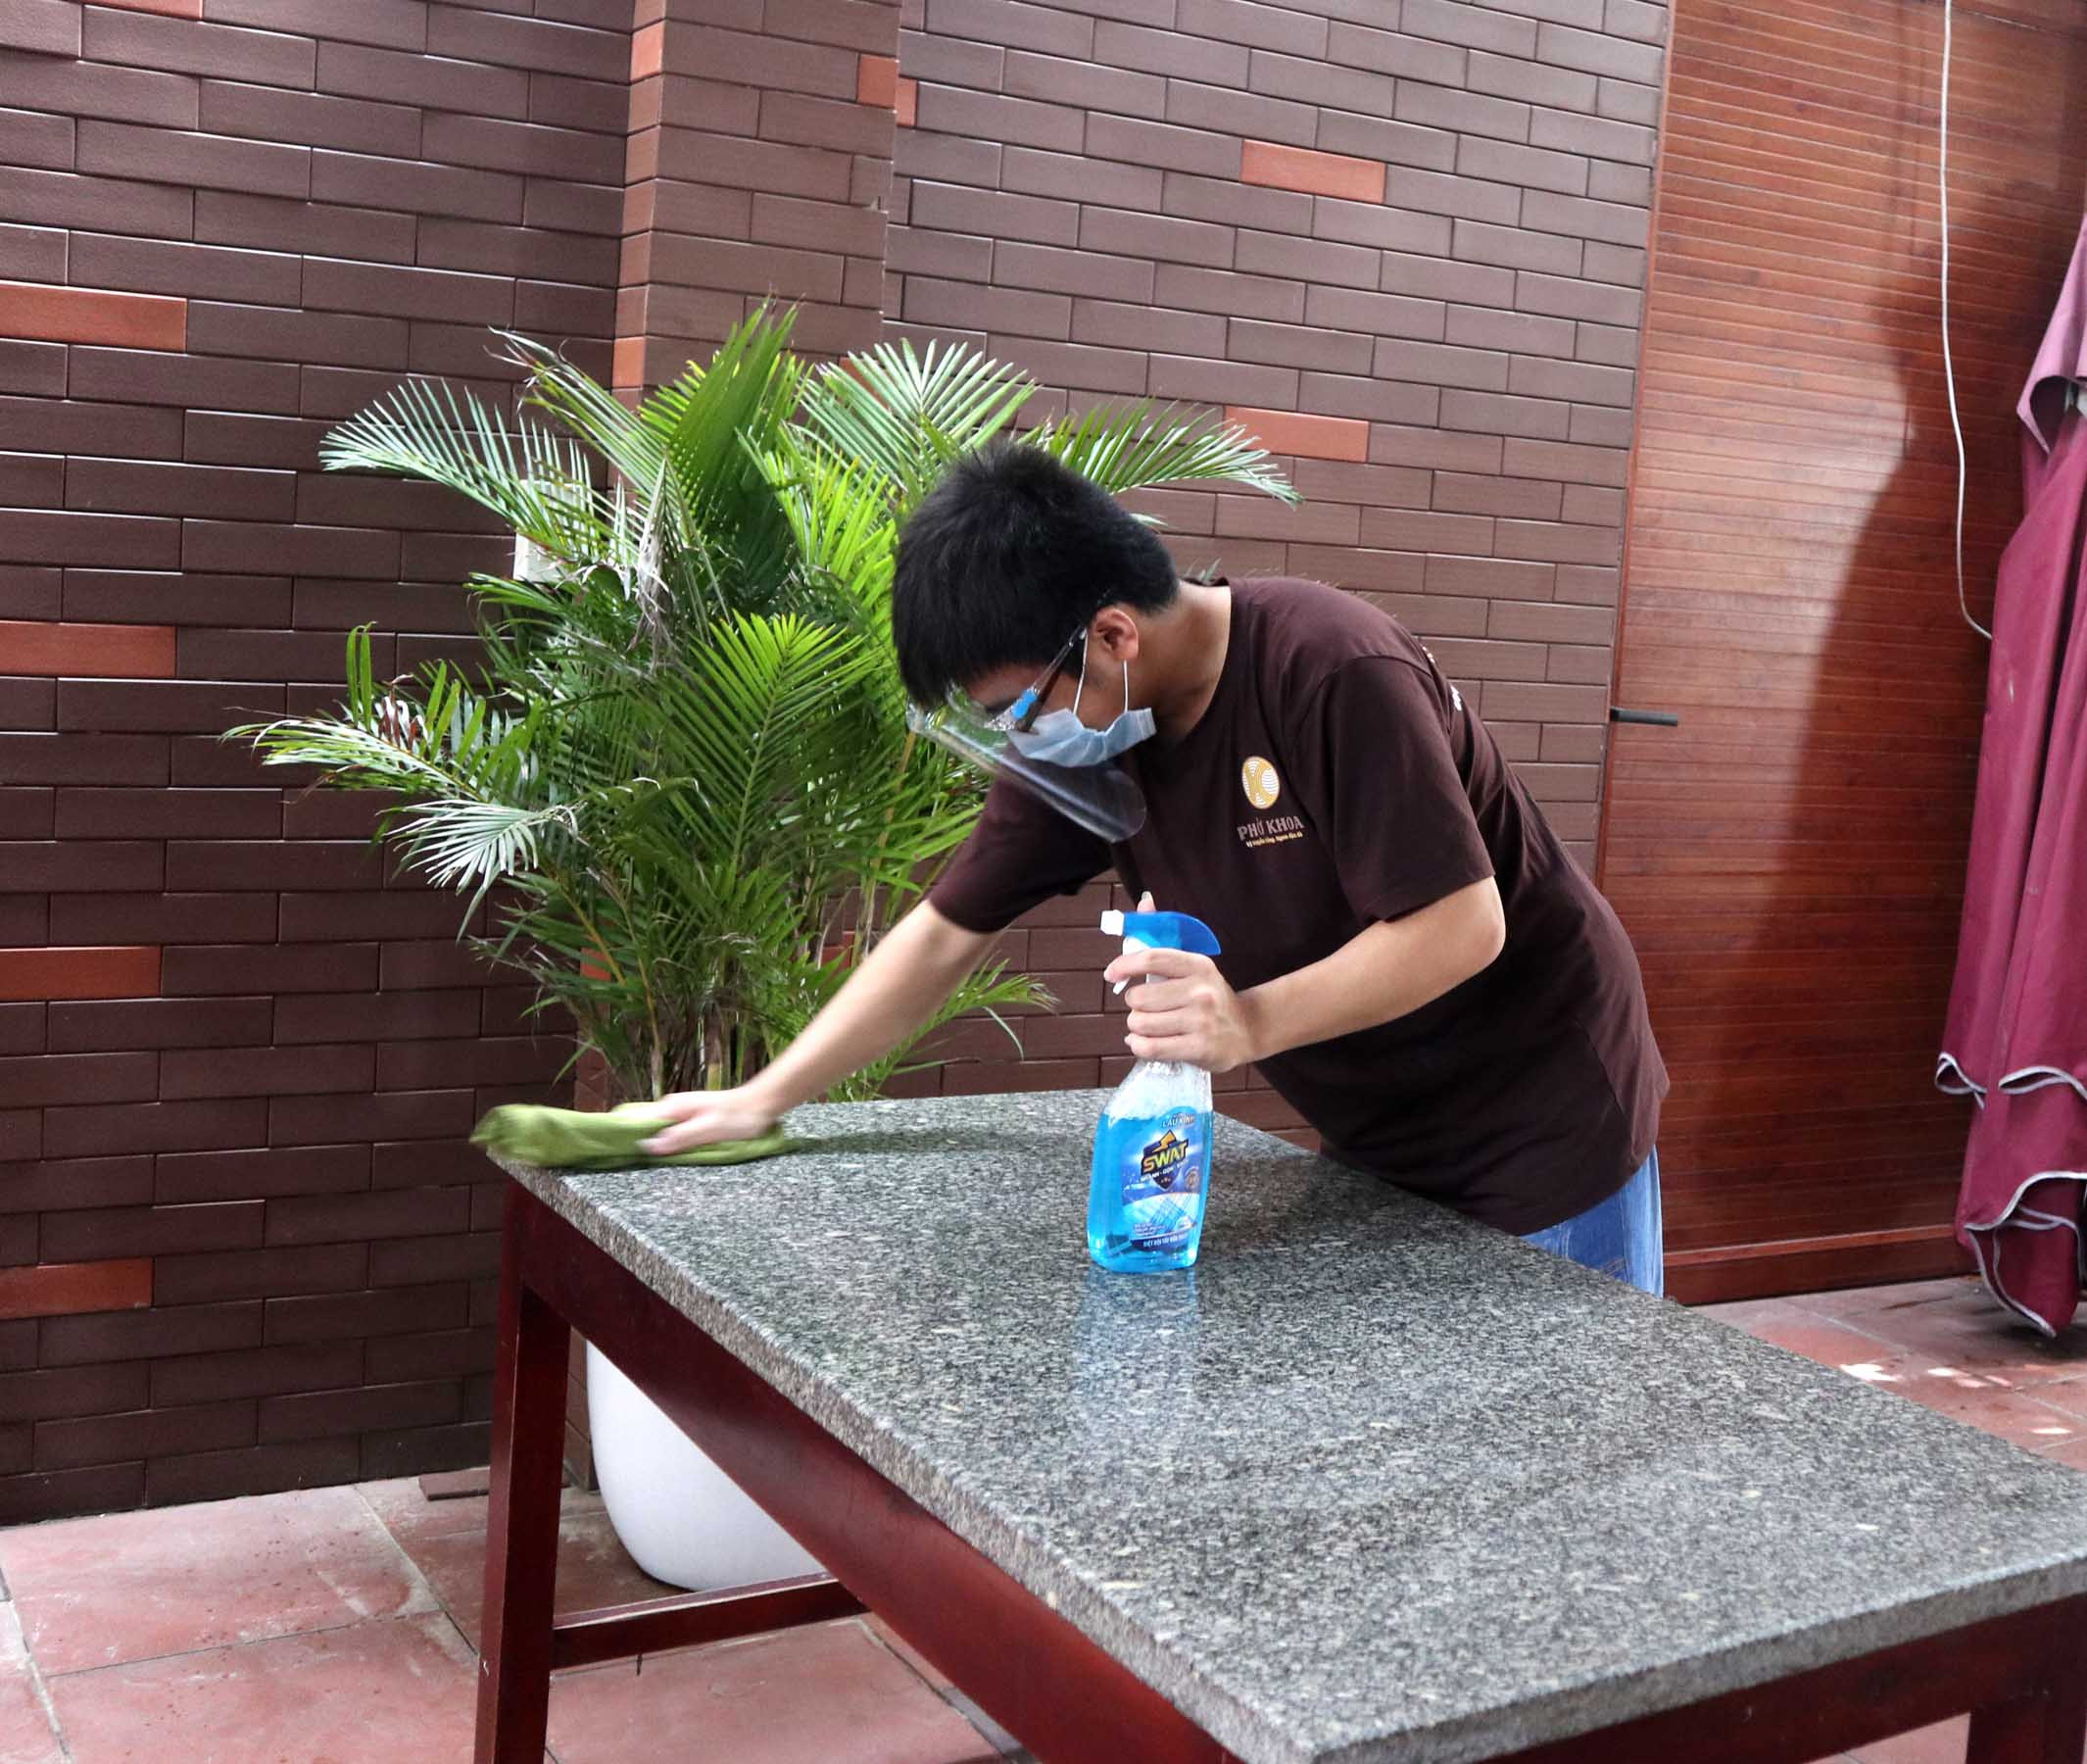 Để đảm bảo vệ sinh, nhân viên quán phở này thường xuyên sát khuẩn mặt bàn sau khi thực khách rời đi. Ảnh: Thanh Phúc